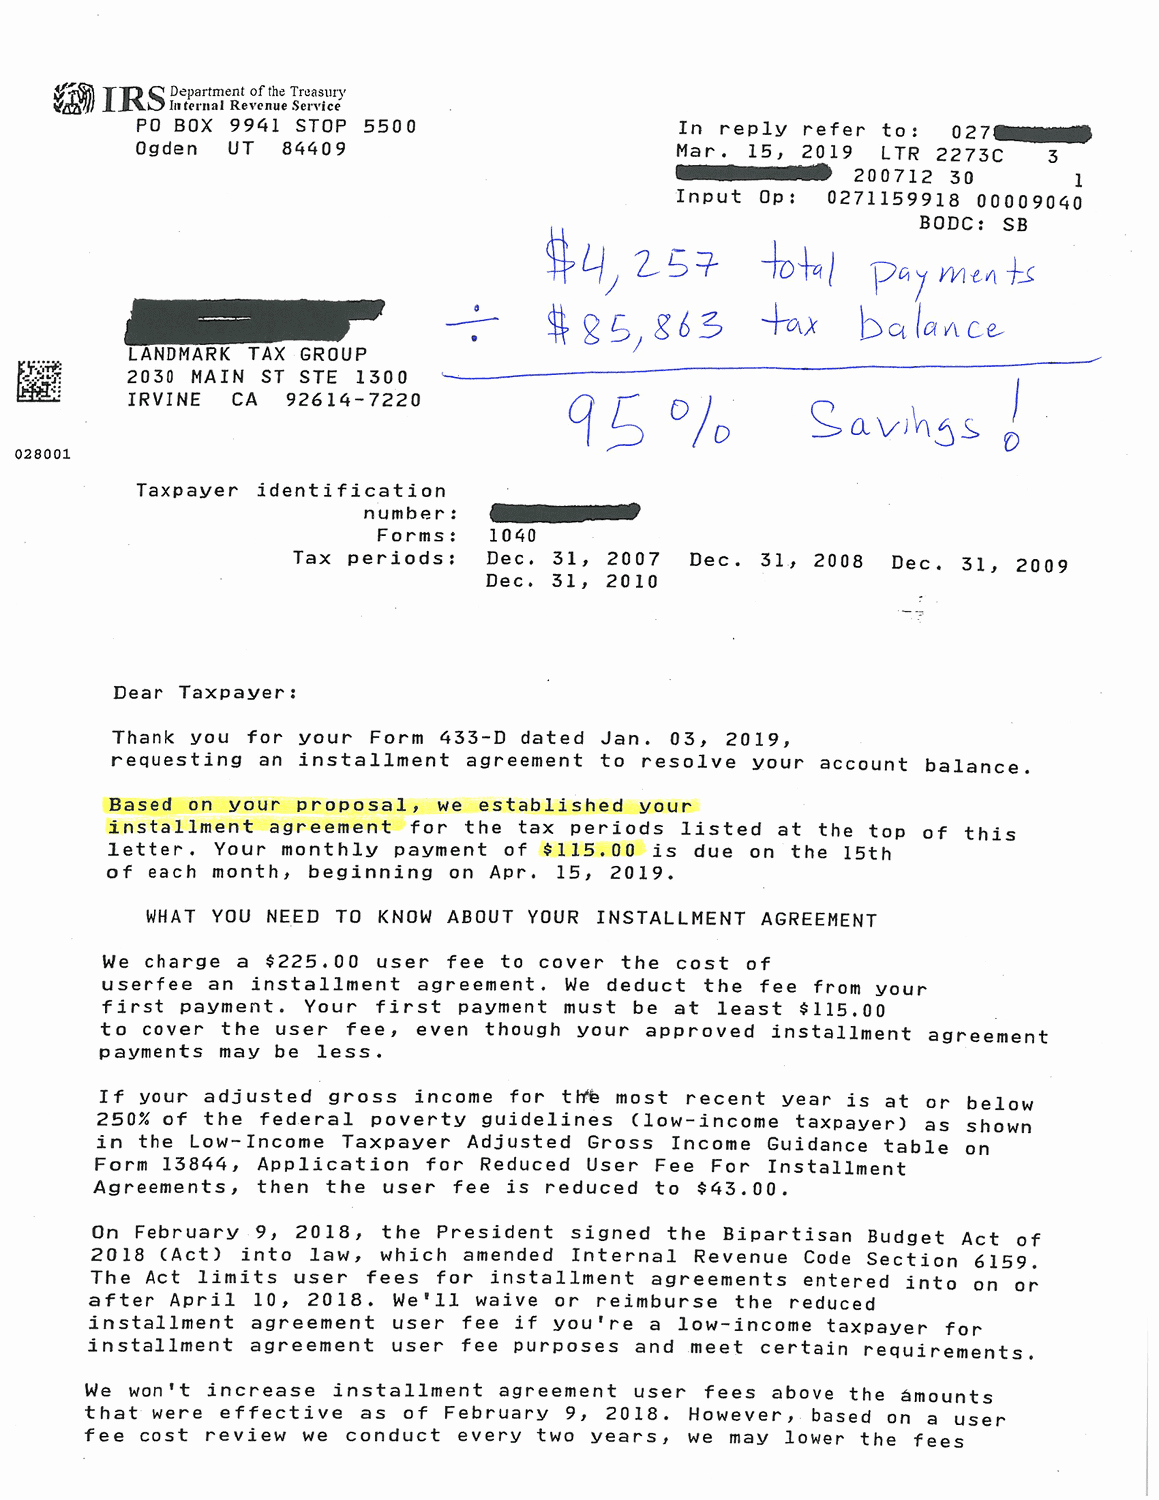 Payment Settlement Letter Lovely How An $85 863 Irs Bill Reached A Settlement